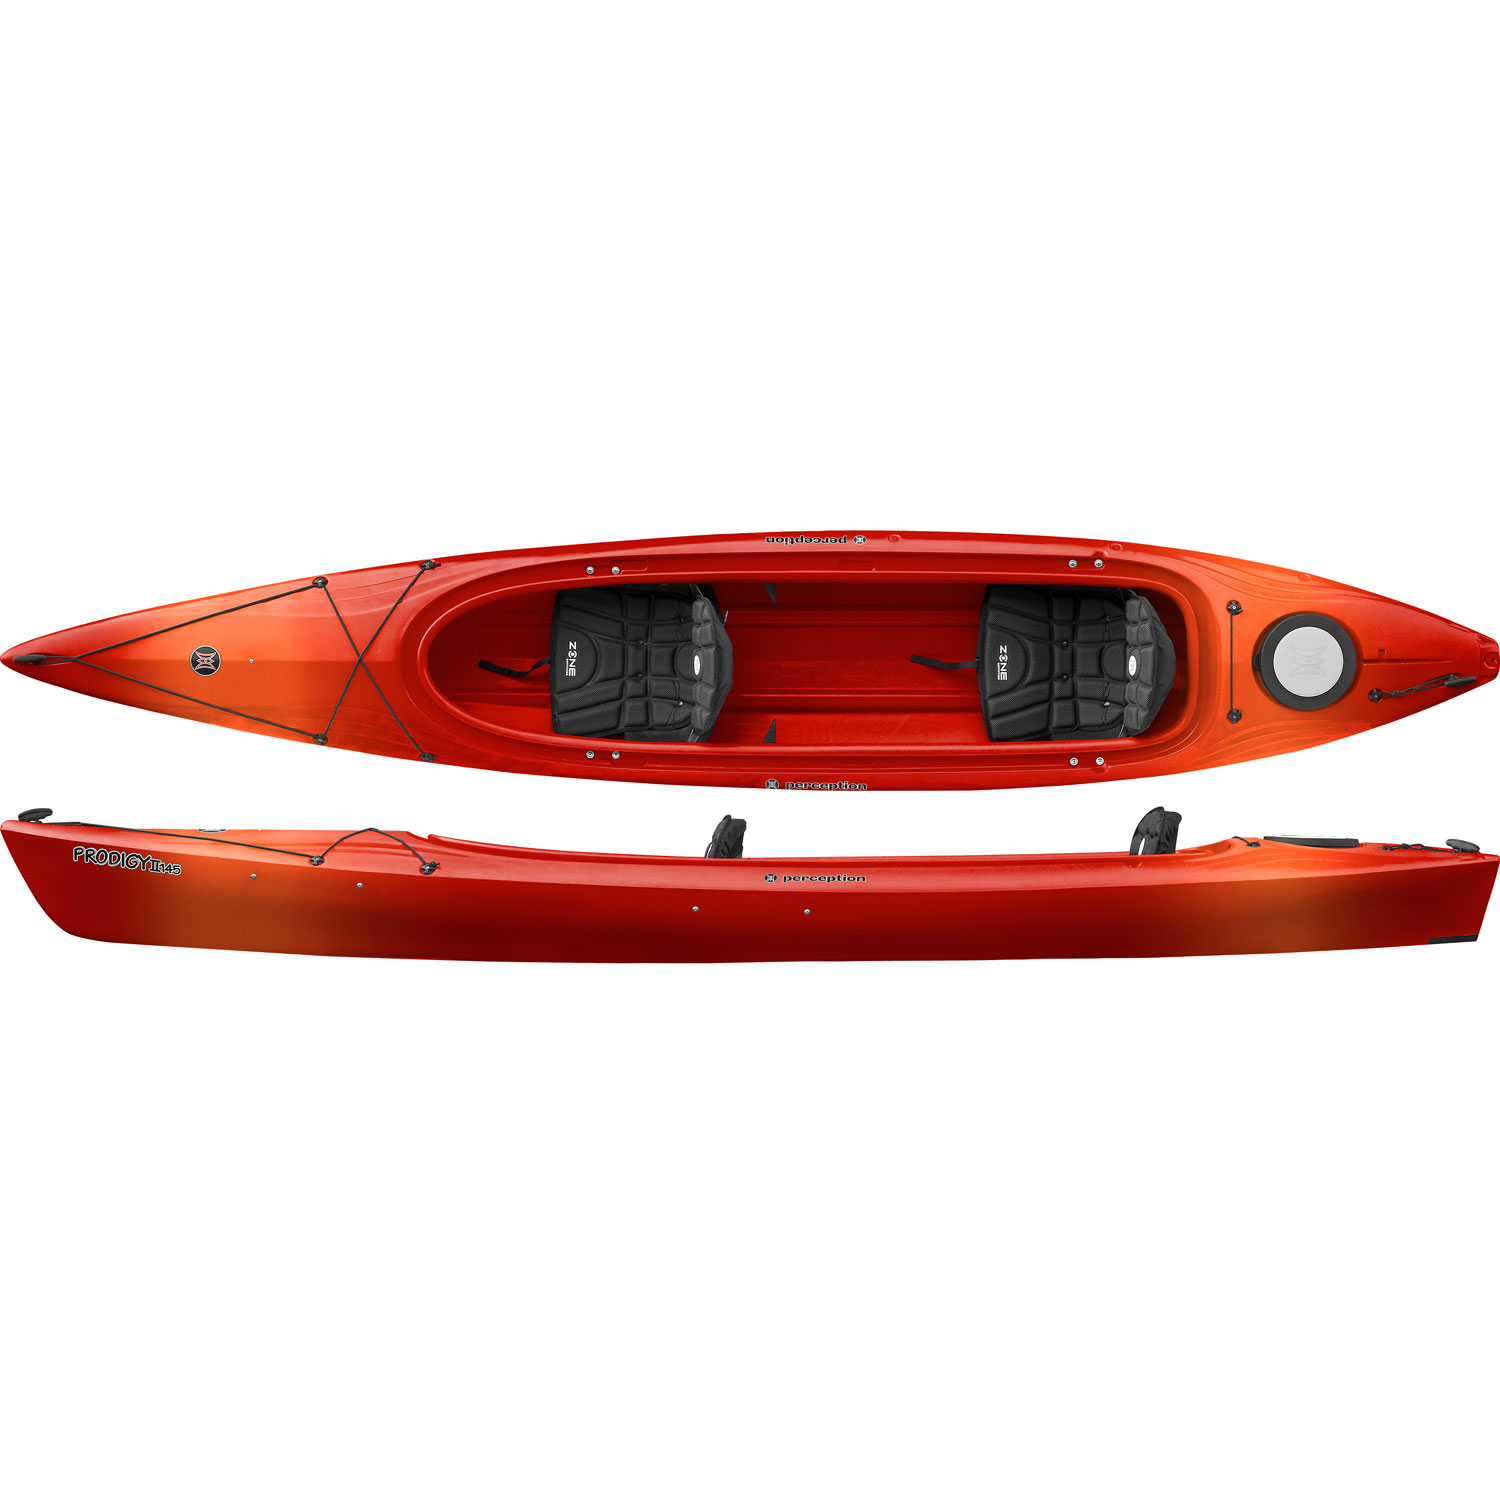  Prodigy Ii 14 5 Recreational Kayak - Red Orange - Recreational